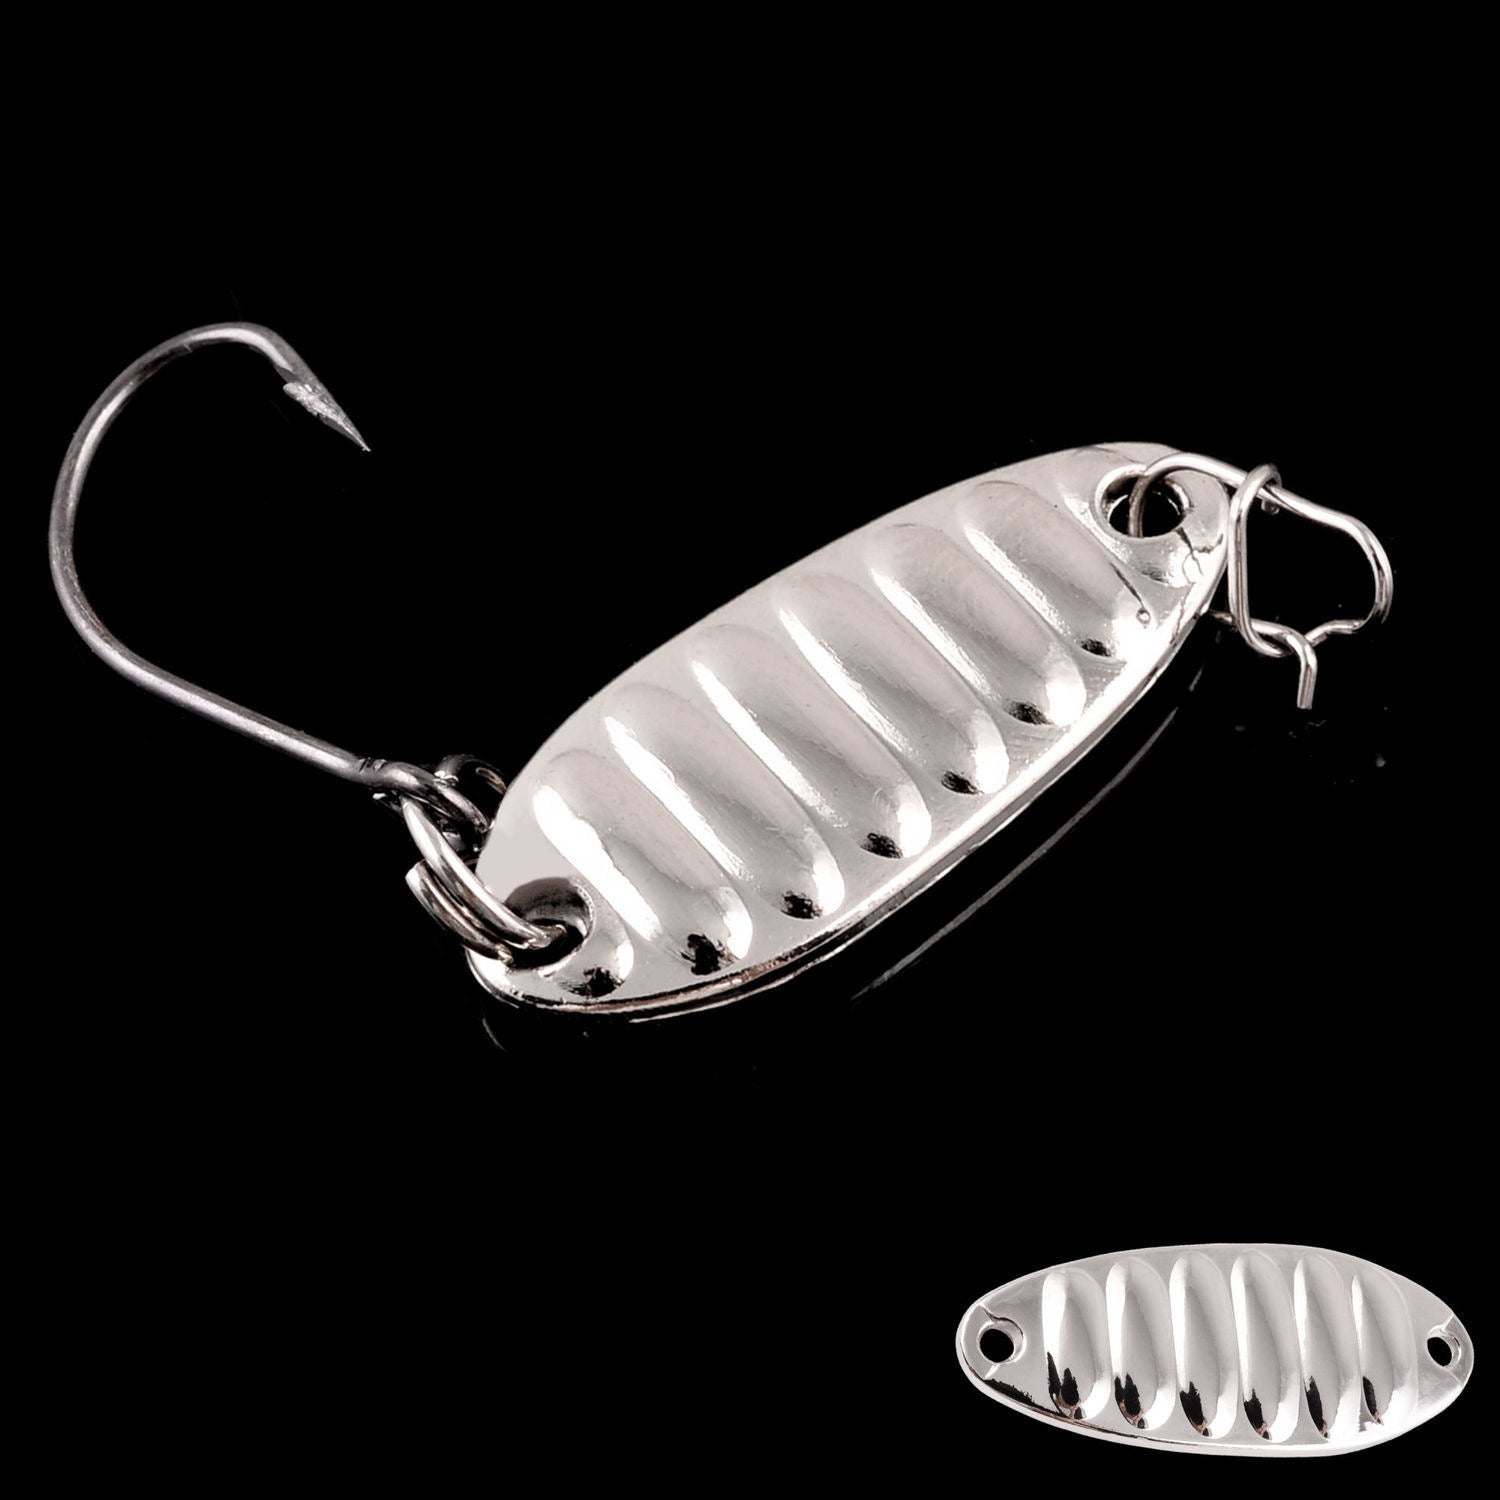 Vibration Metal Spoon Bait 5pcs – KIRA Fishing